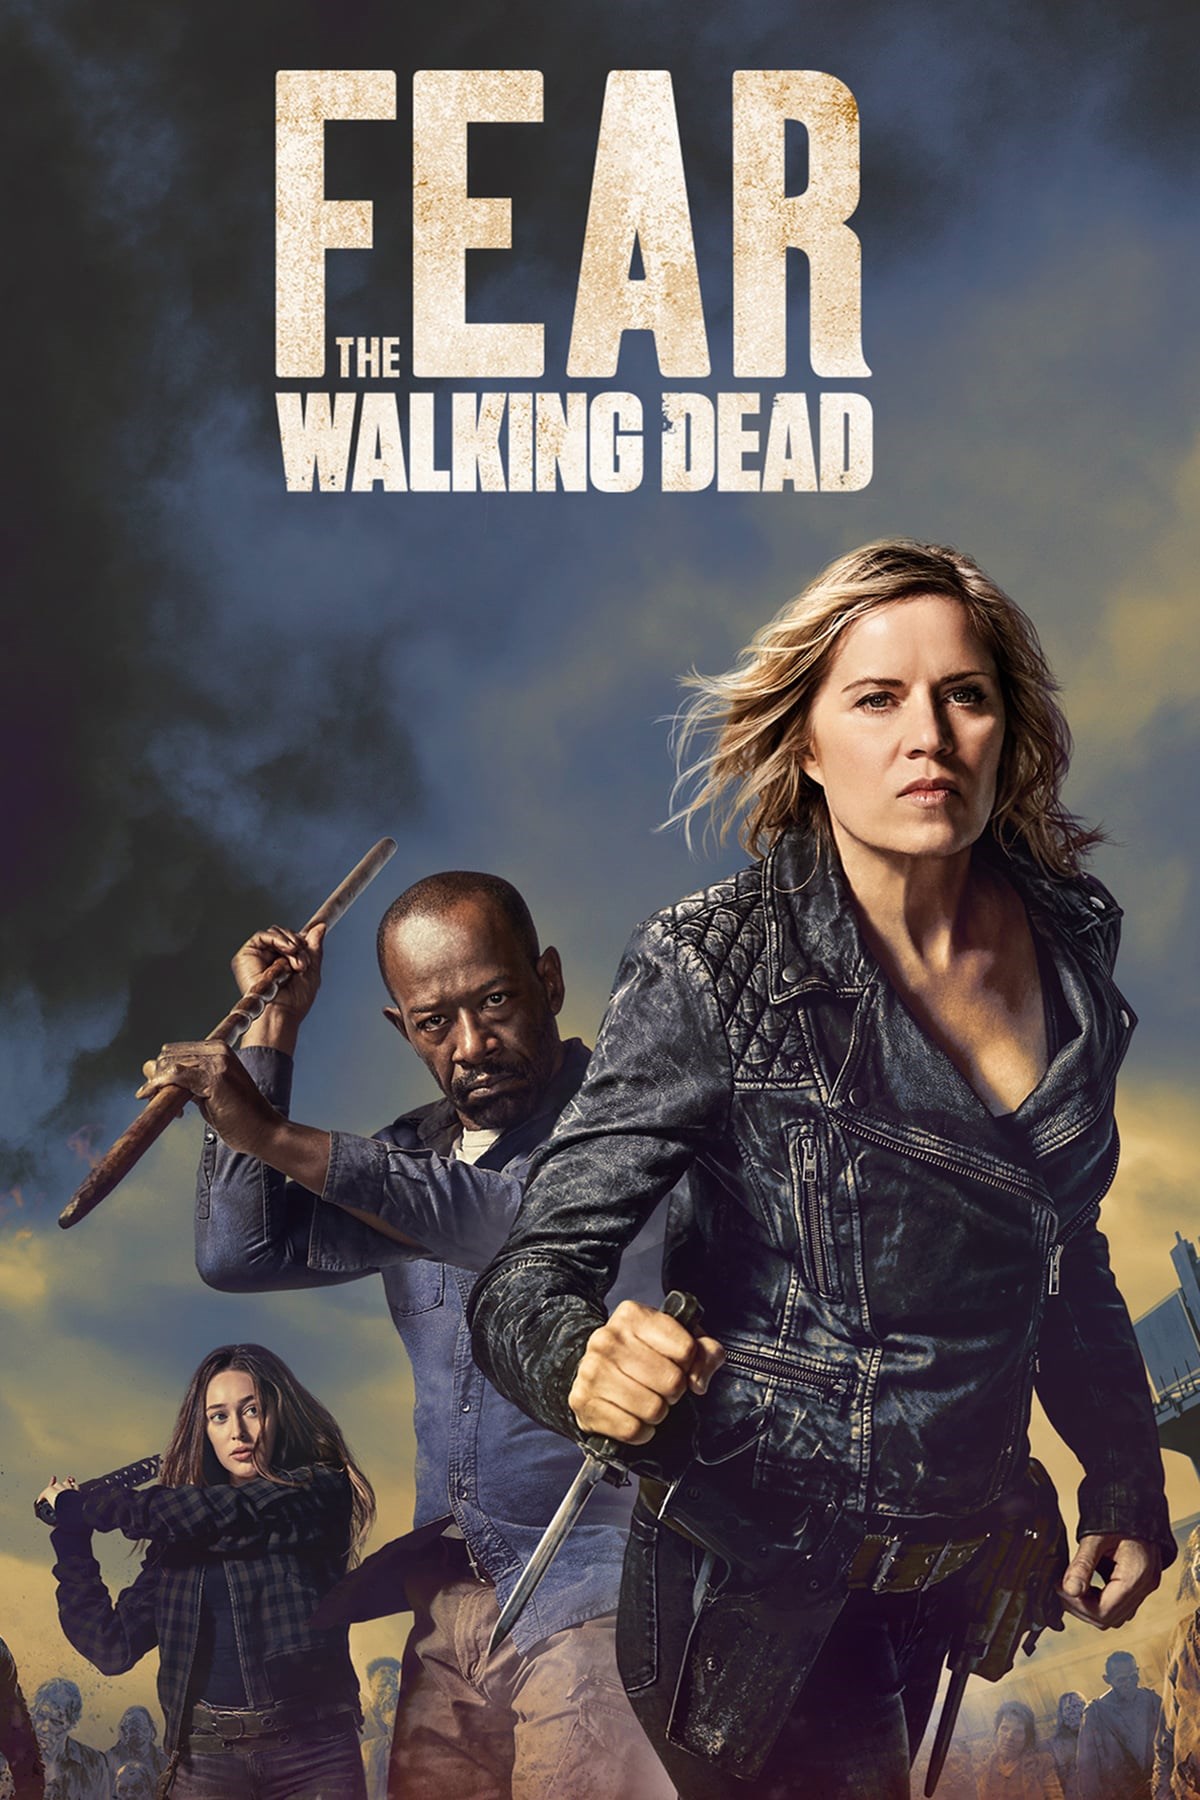 Watch The Walking Dead Season 2, Episode 13 Online Free!